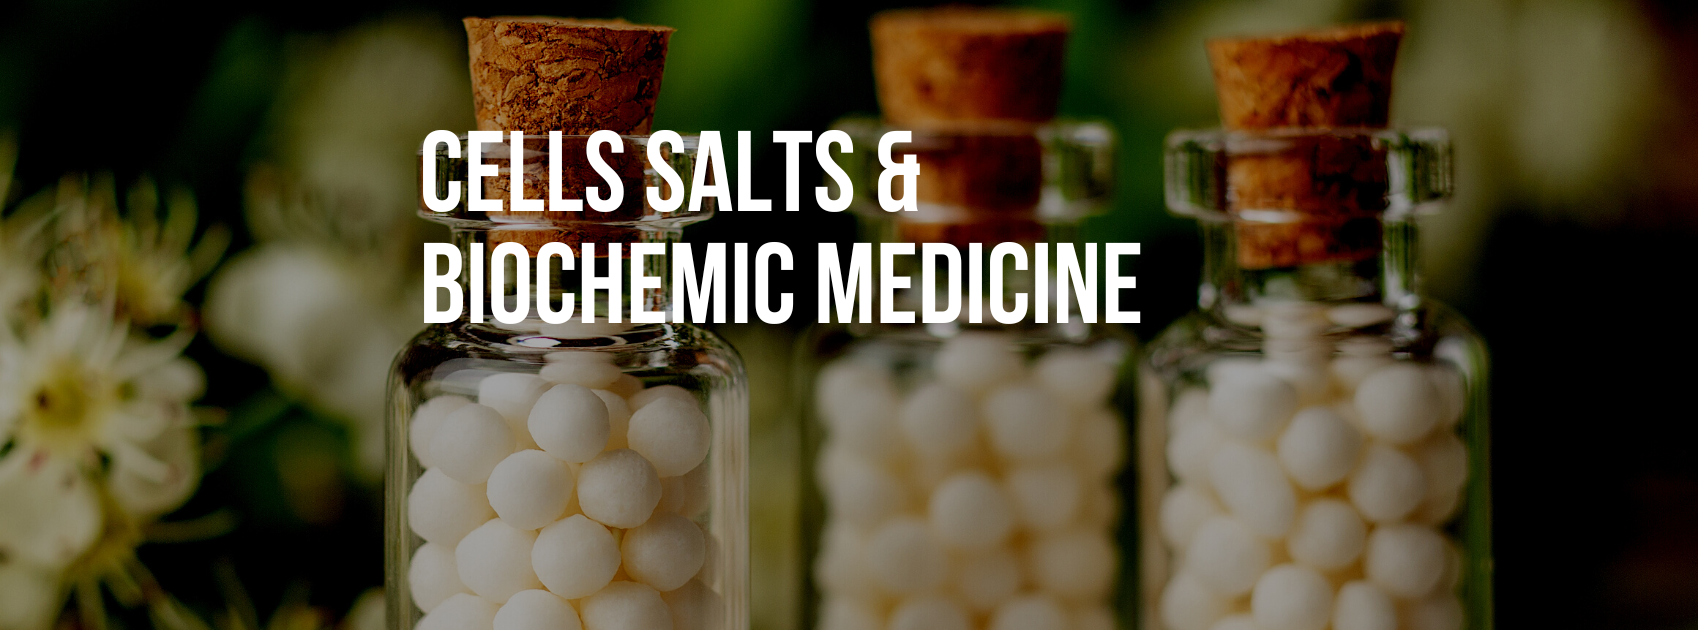 Cells salts & Biochemic Medicine